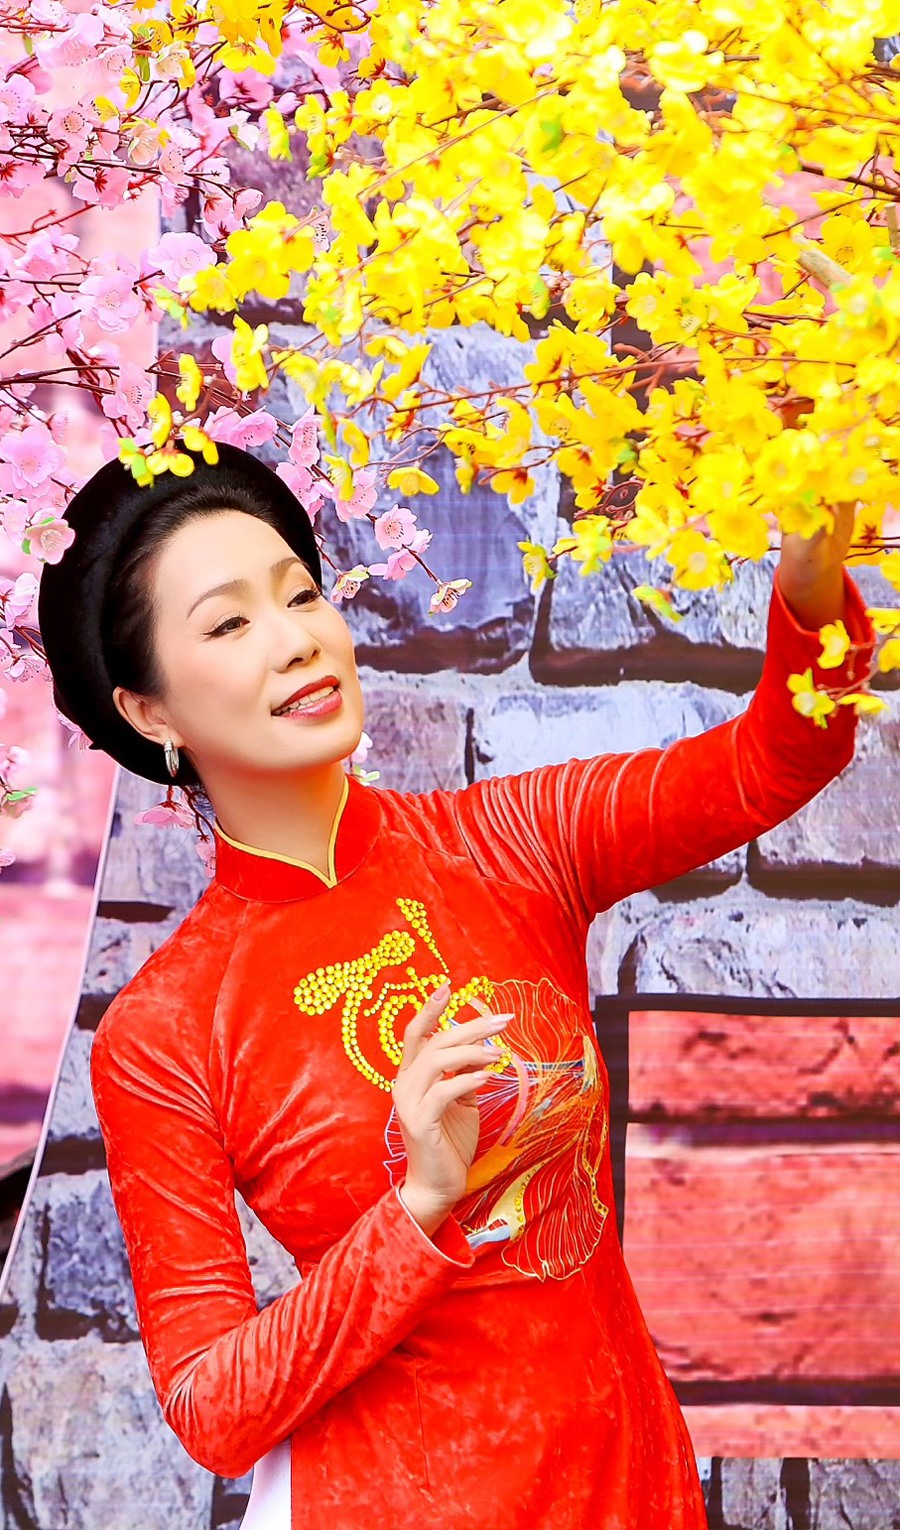 Trước thềm năm mới xuân Quý Mão 2023, NSƯT Trịnh Kim Chi gửi đến khán giả bộ ảnh mới mang đậm không khí rộn rã ngày xuân cùng lời chúc ý nghĩa, may mắn đầu năm.